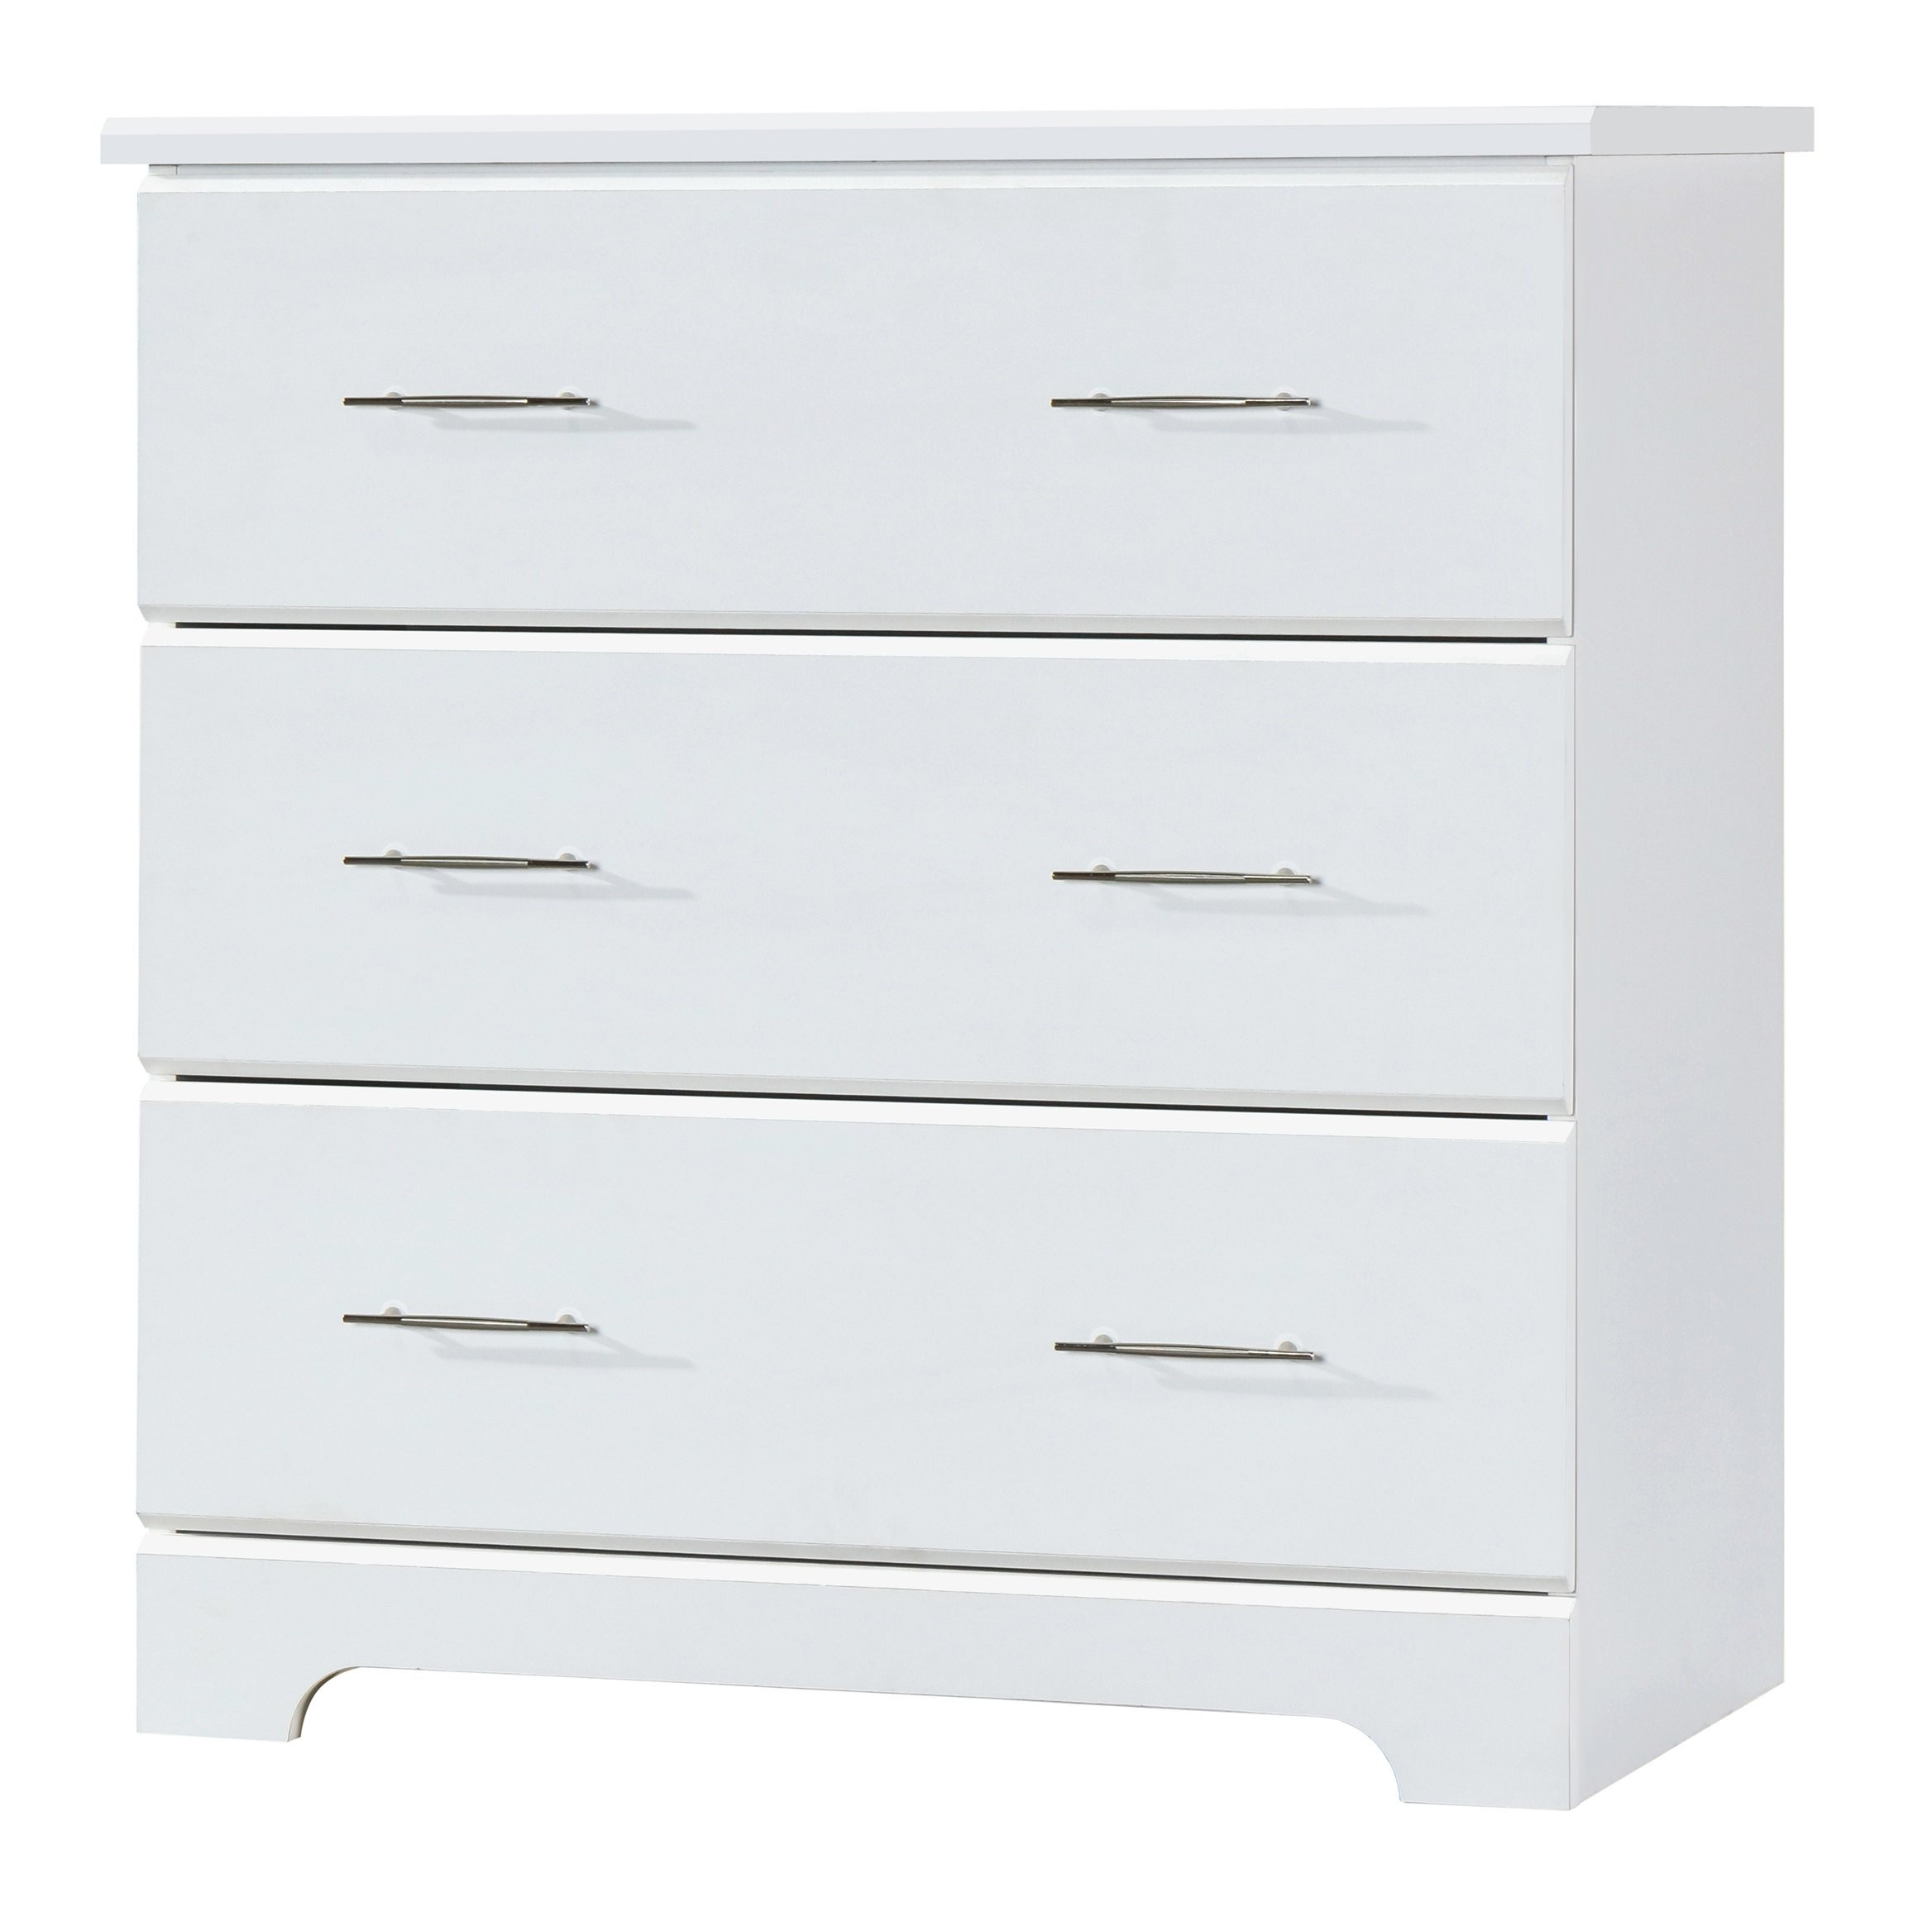 White Dresser For Kids Room
 Amazon Storkcraft Brookside 6 Drawer Dresser White